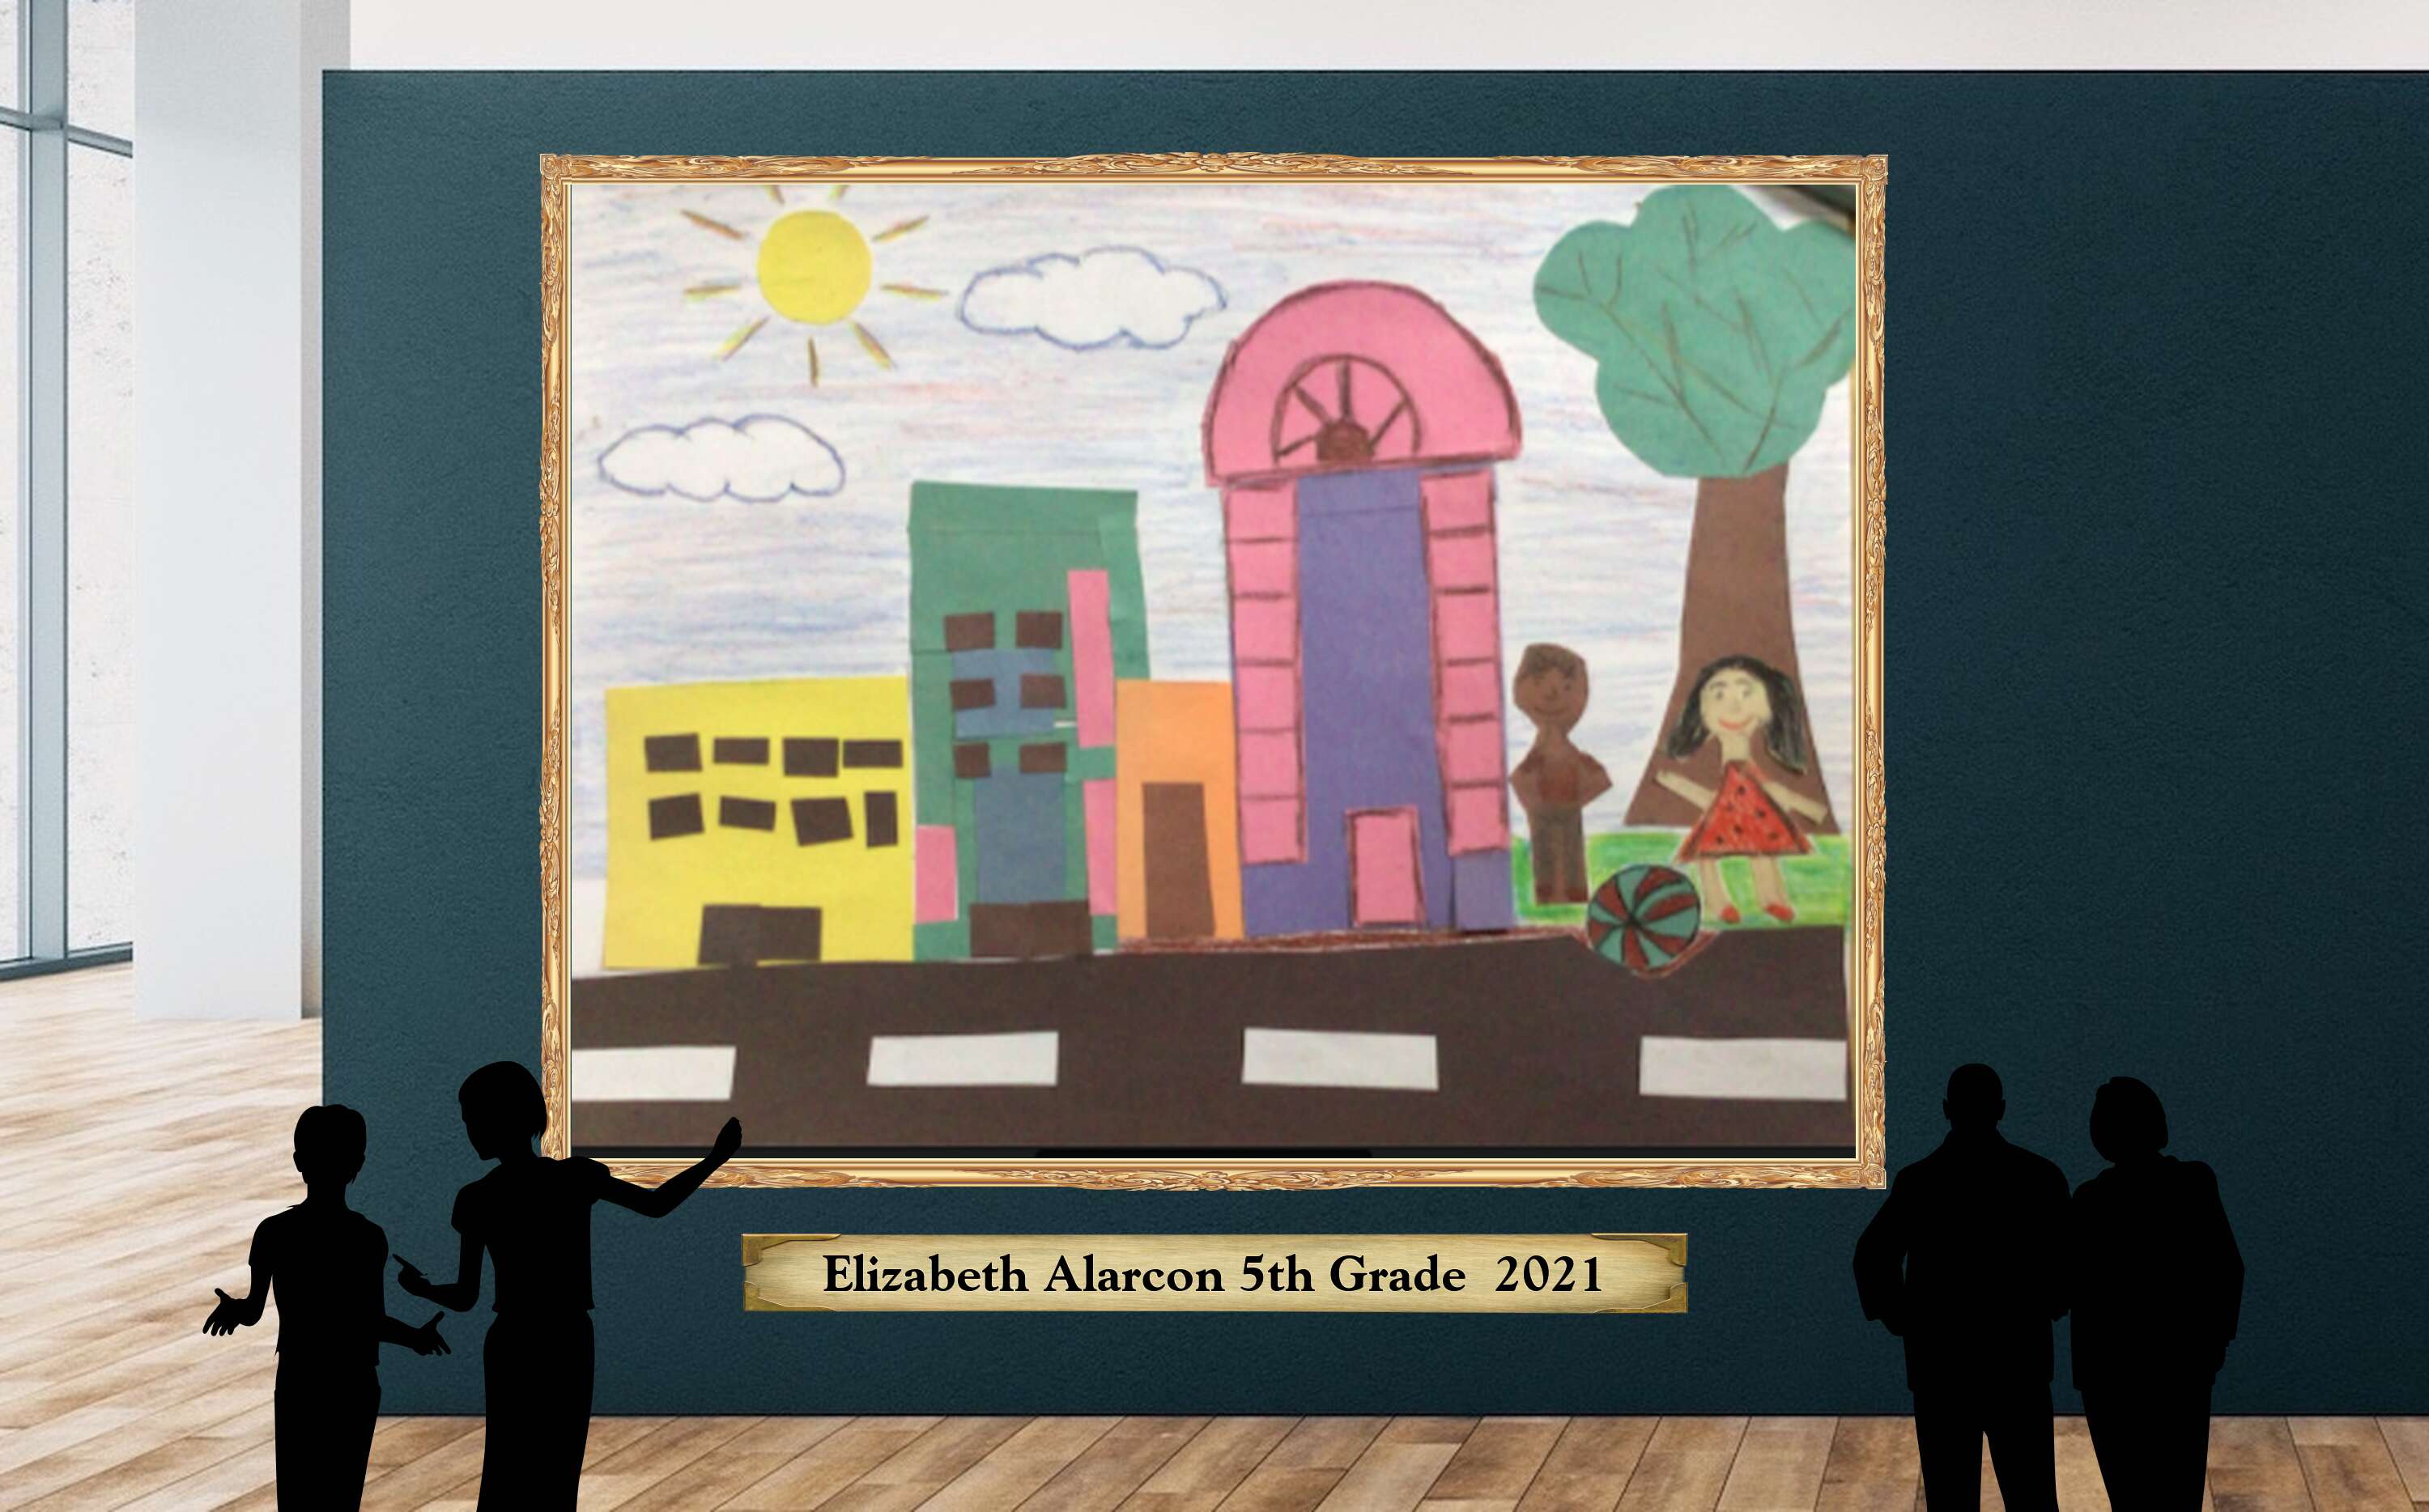 Elizabeth Alarcon 5th Grade  2021